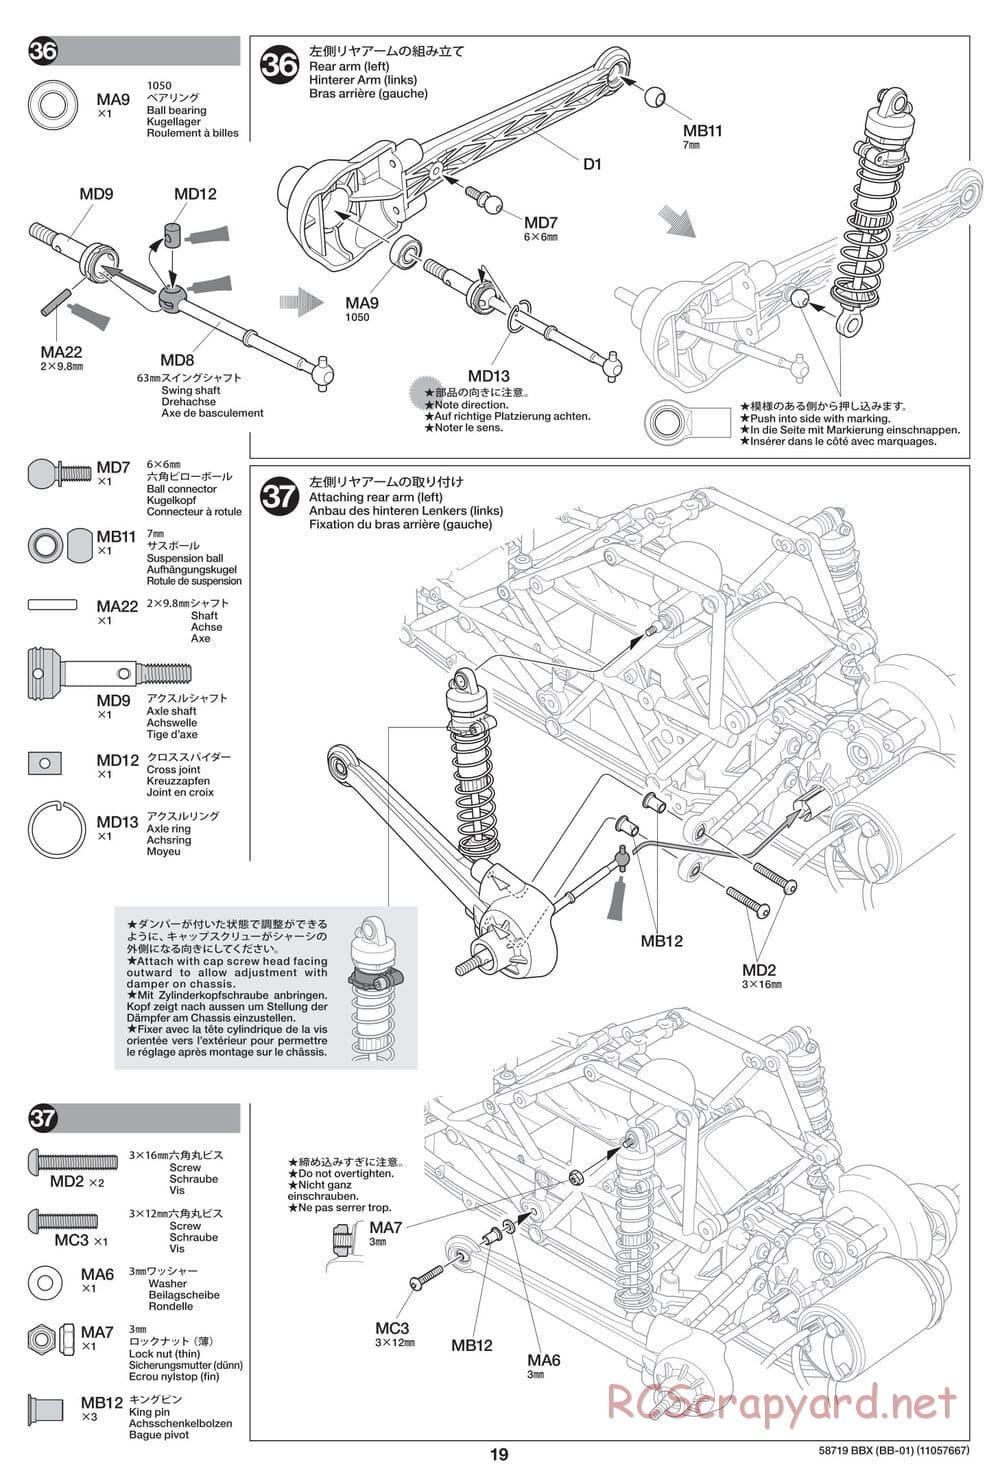 Tamiya - BBX - BB-01 Chassis - Manual - Page 19